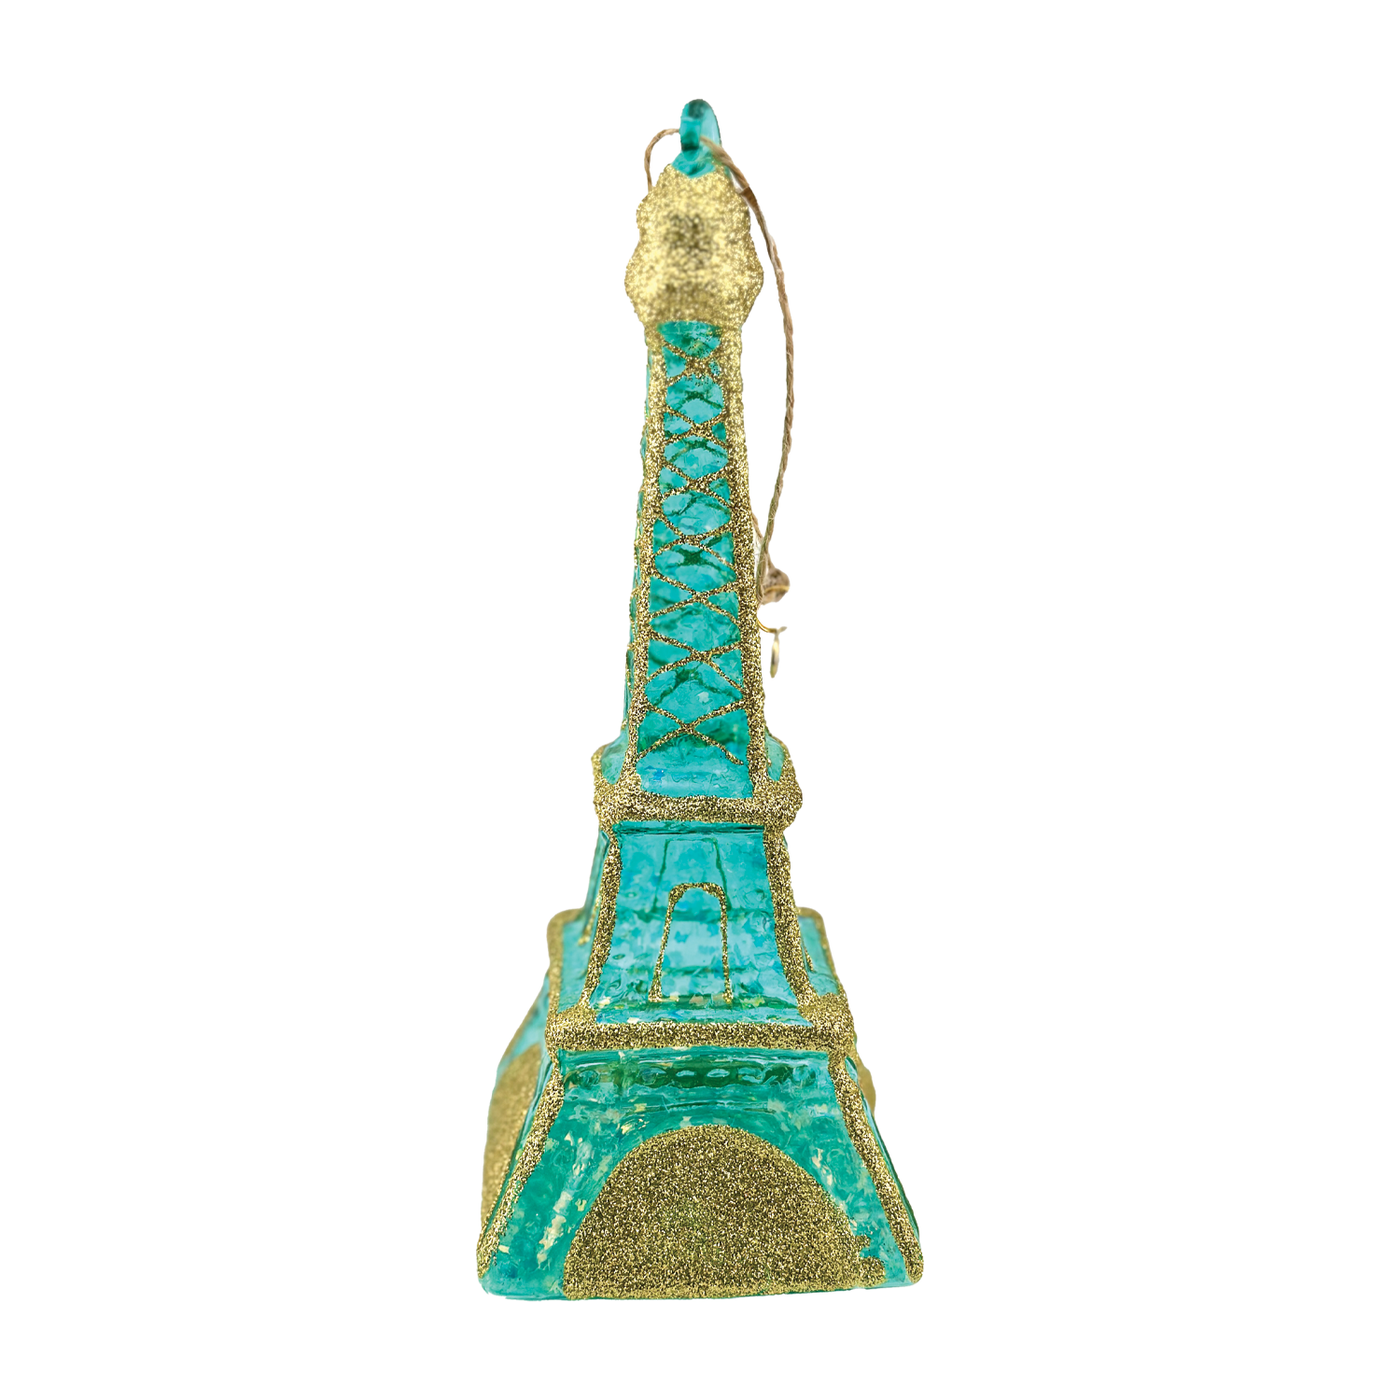 Rainbow Eiffel Tower Ornament - Blue-Green